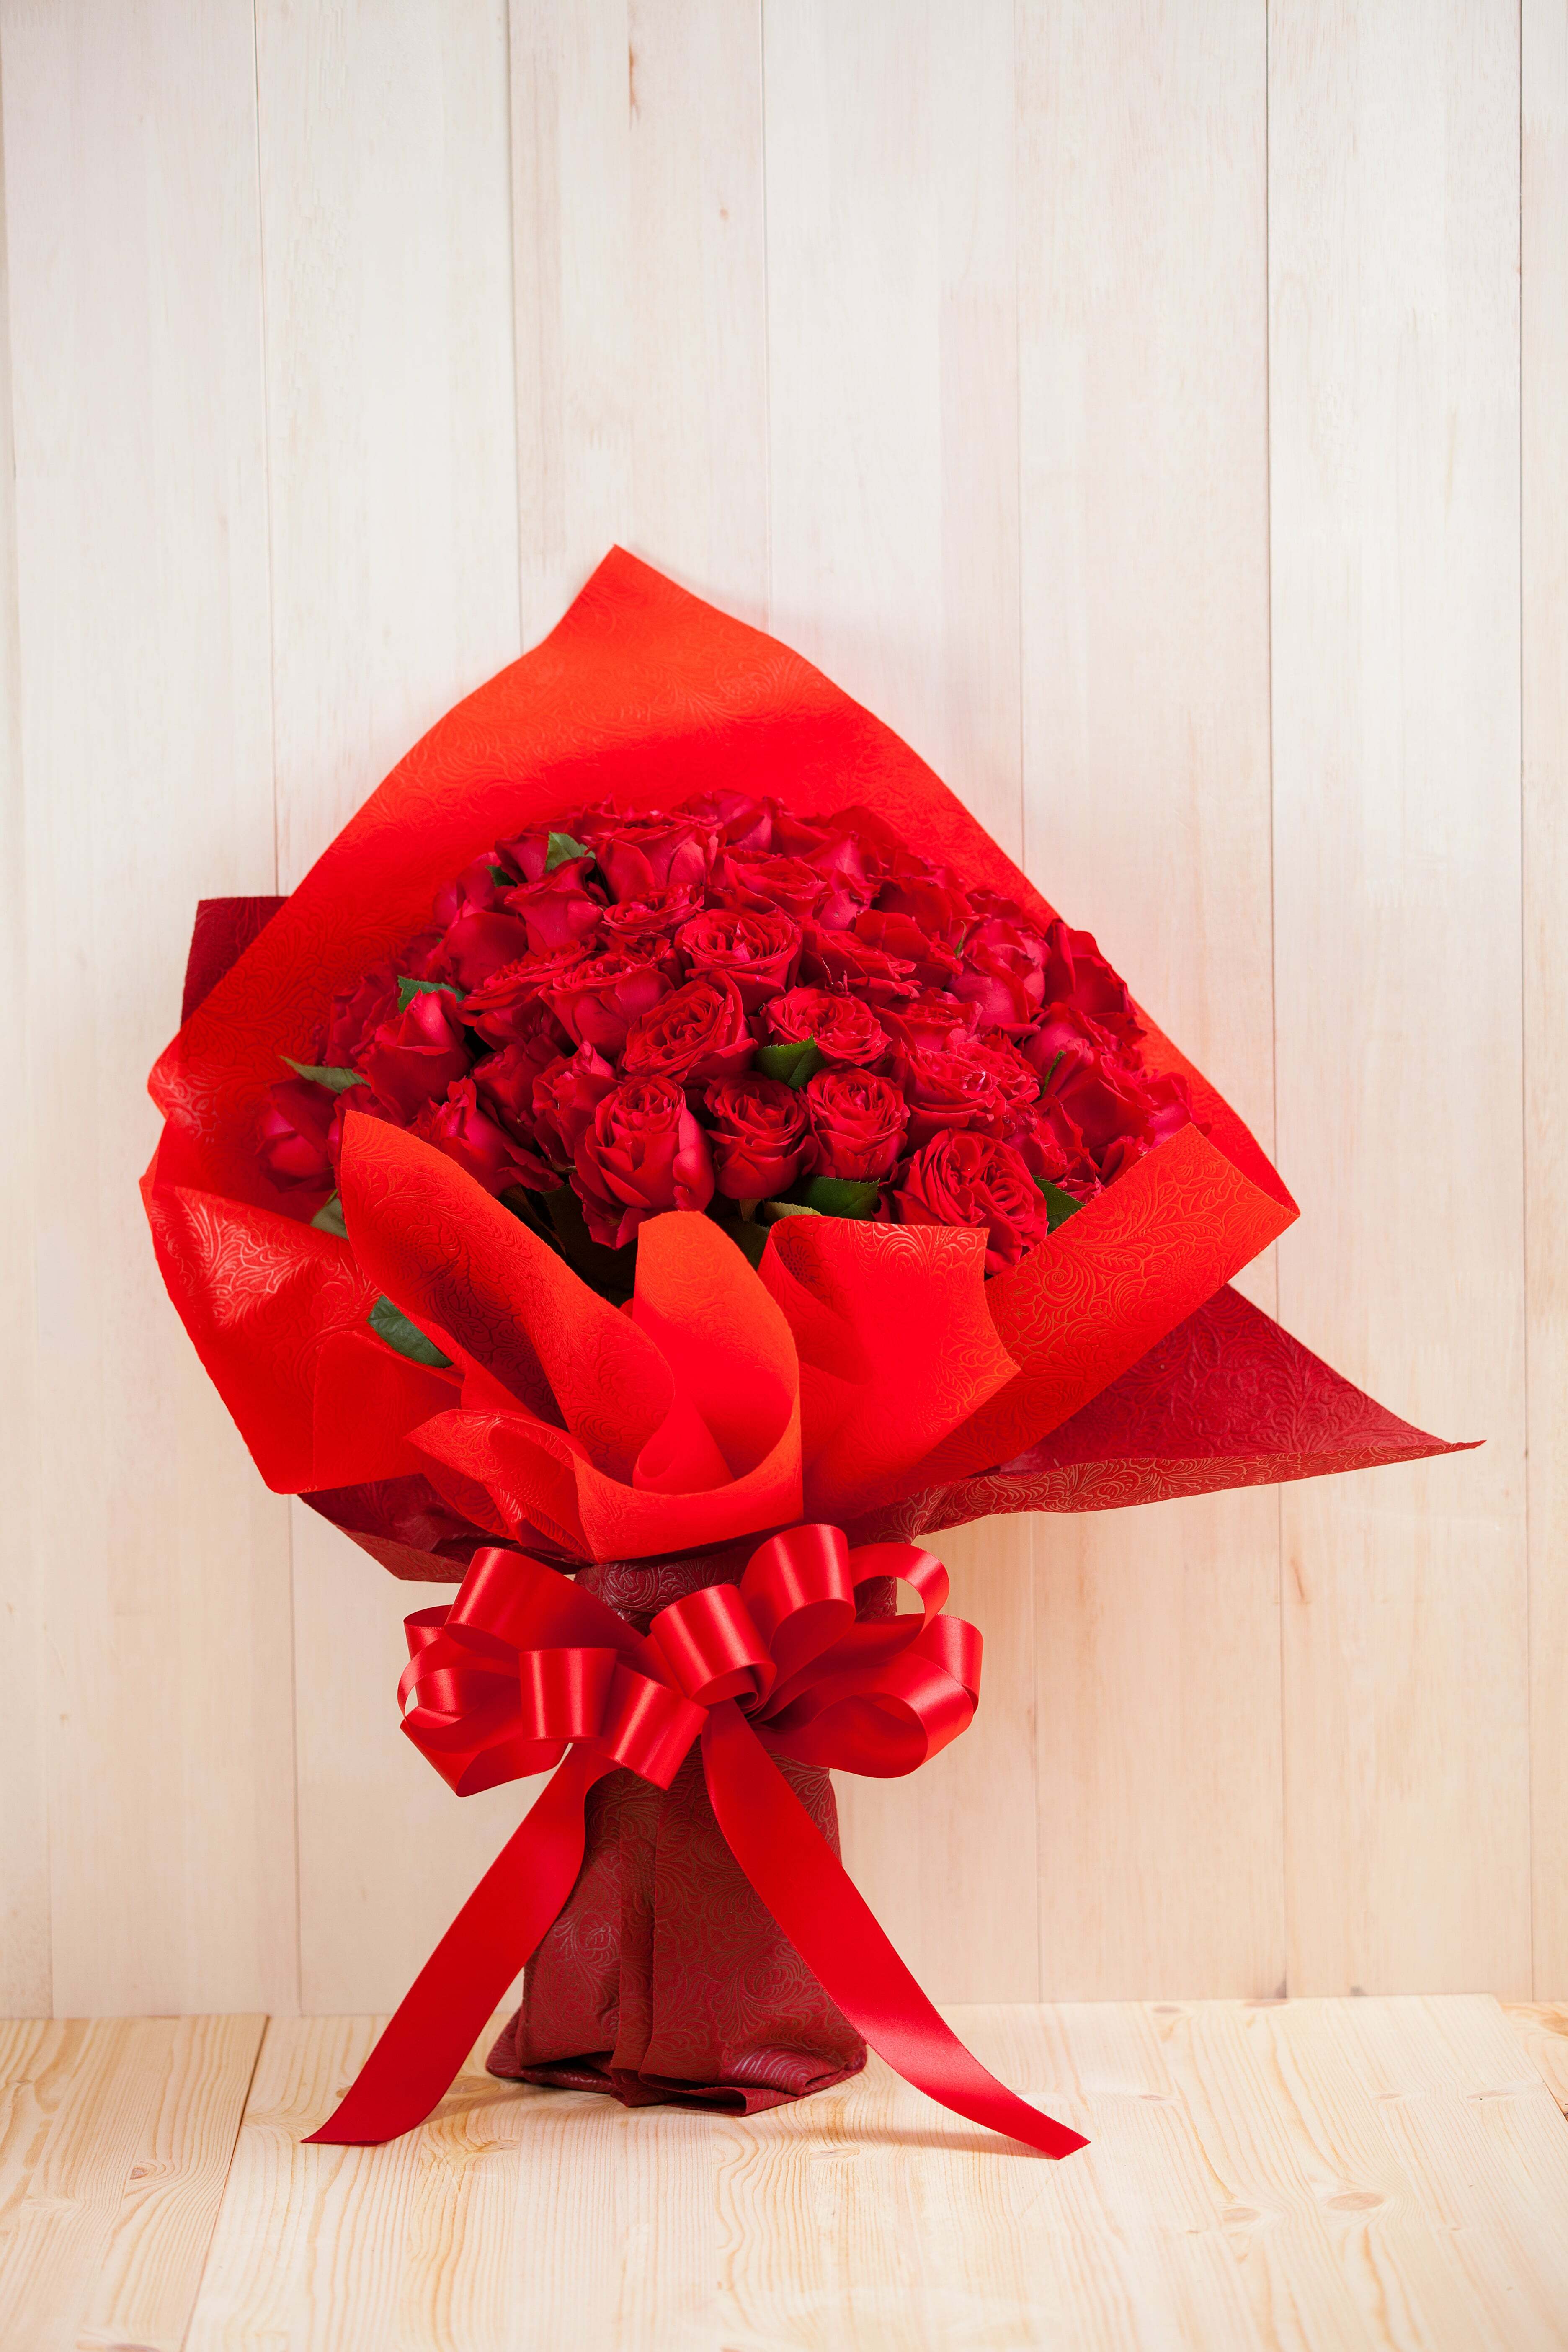 プレゼントにぴったり 花束 60本のバラ 4プラの花屋hug Flowers 通販サイト 花のプレゼント ギフトフラワー 北海道 東北地方送料無料